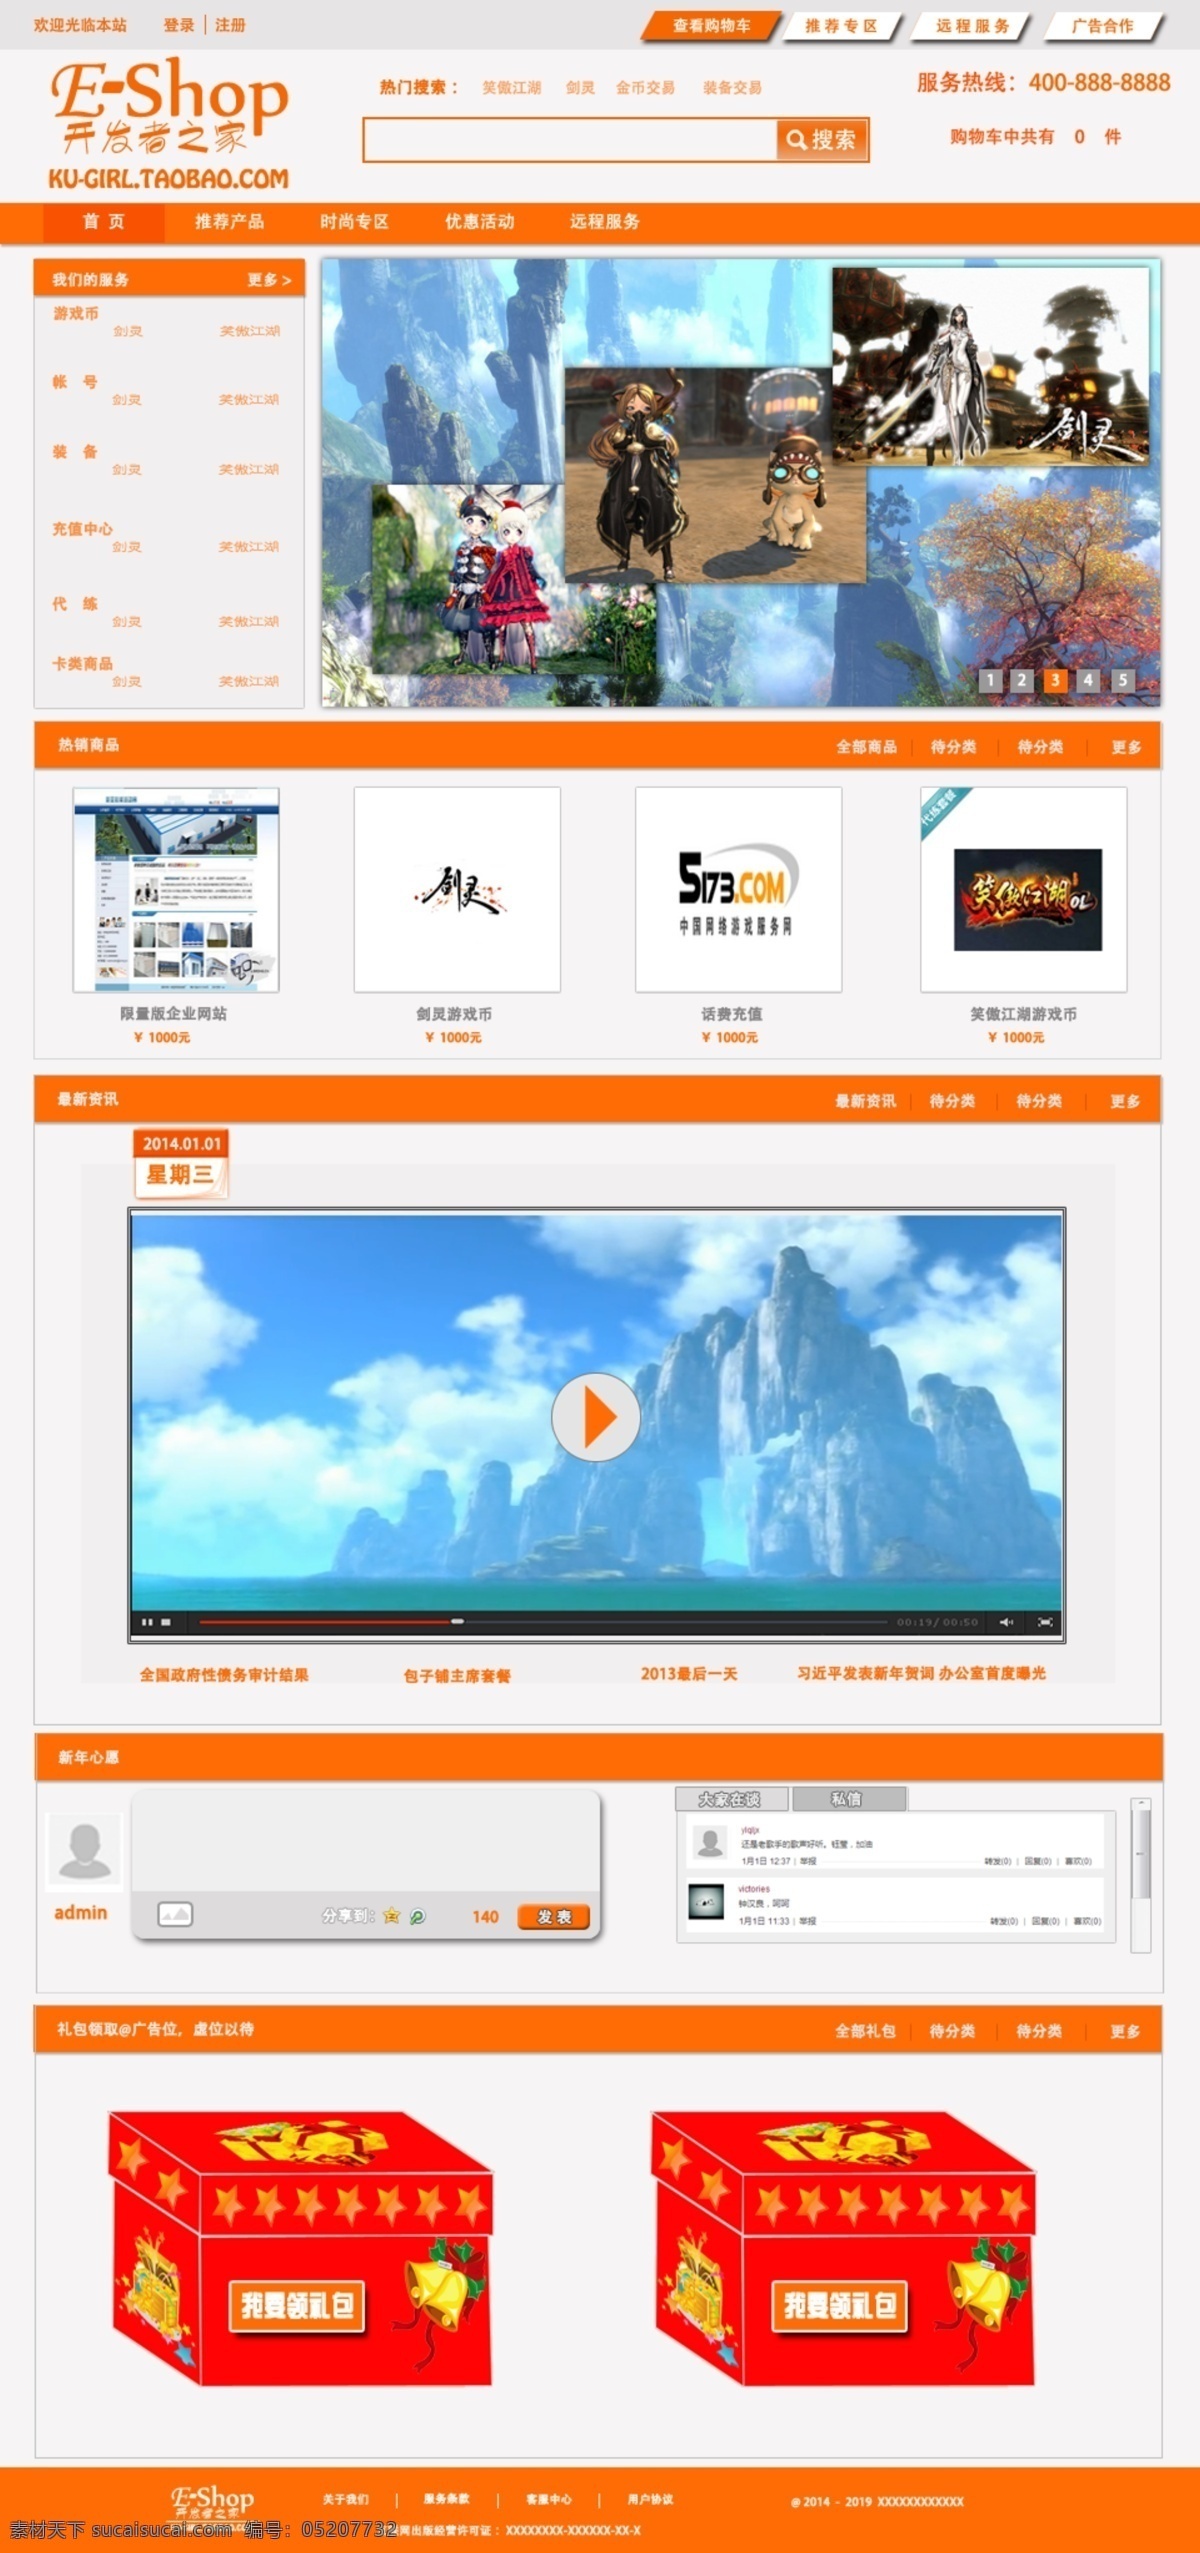 网站首页 模块 筛选 eshop 网站 我们的服务 热销商品 可増减模块 开发者之家 kugirl taobao com 原创设计 原创网页设计